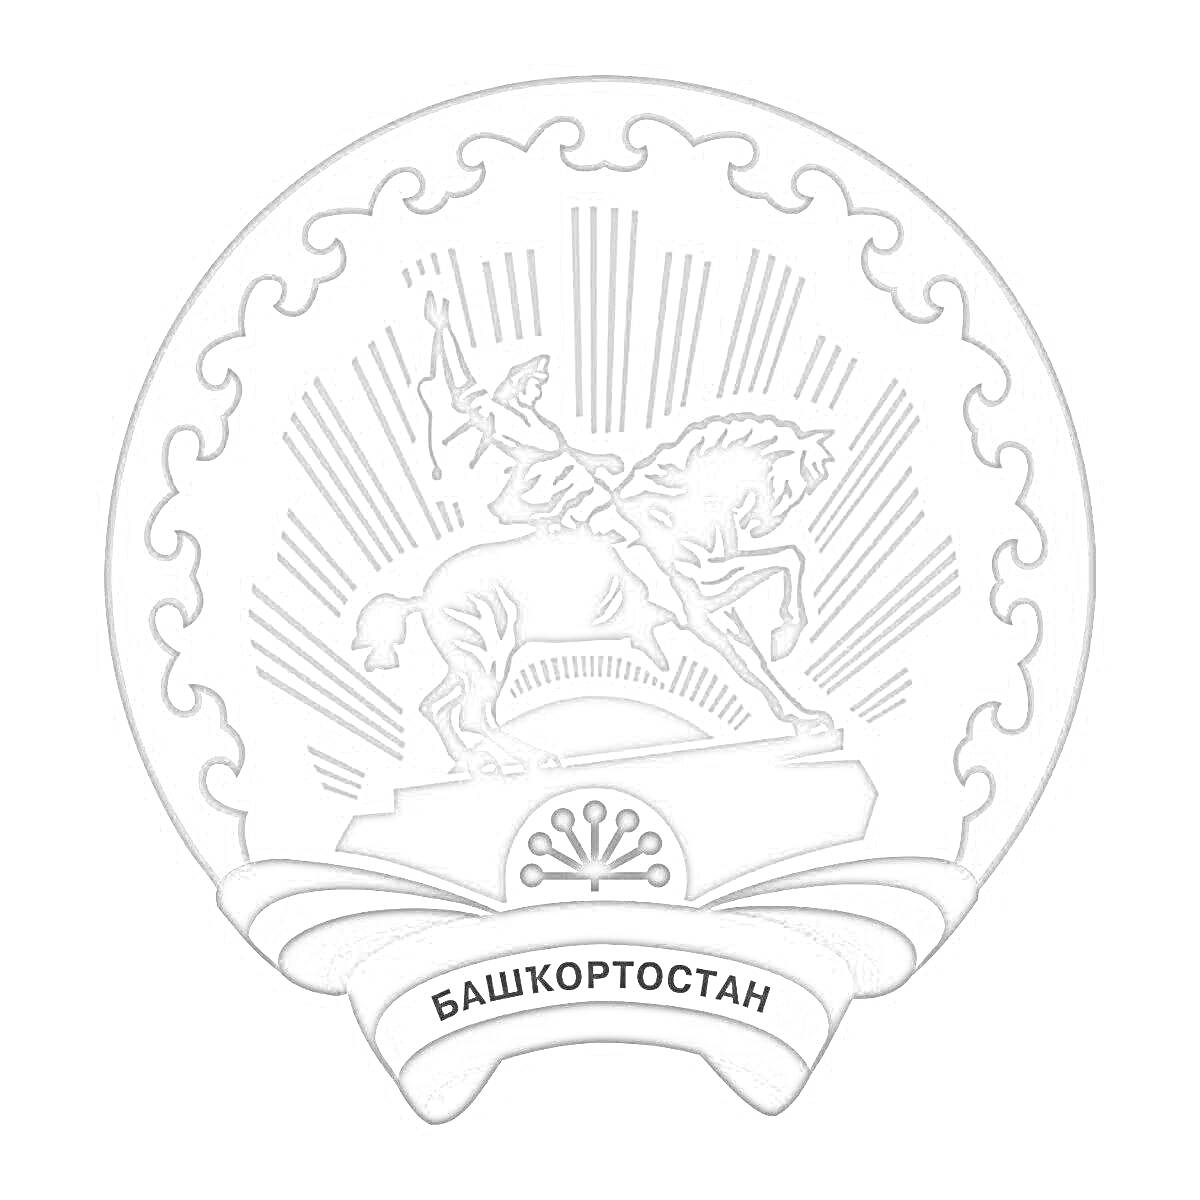 Раскраска Герб Республики Башкортостан с изображением всадника, гор, лучей солнца, национального орнамента и надписи 